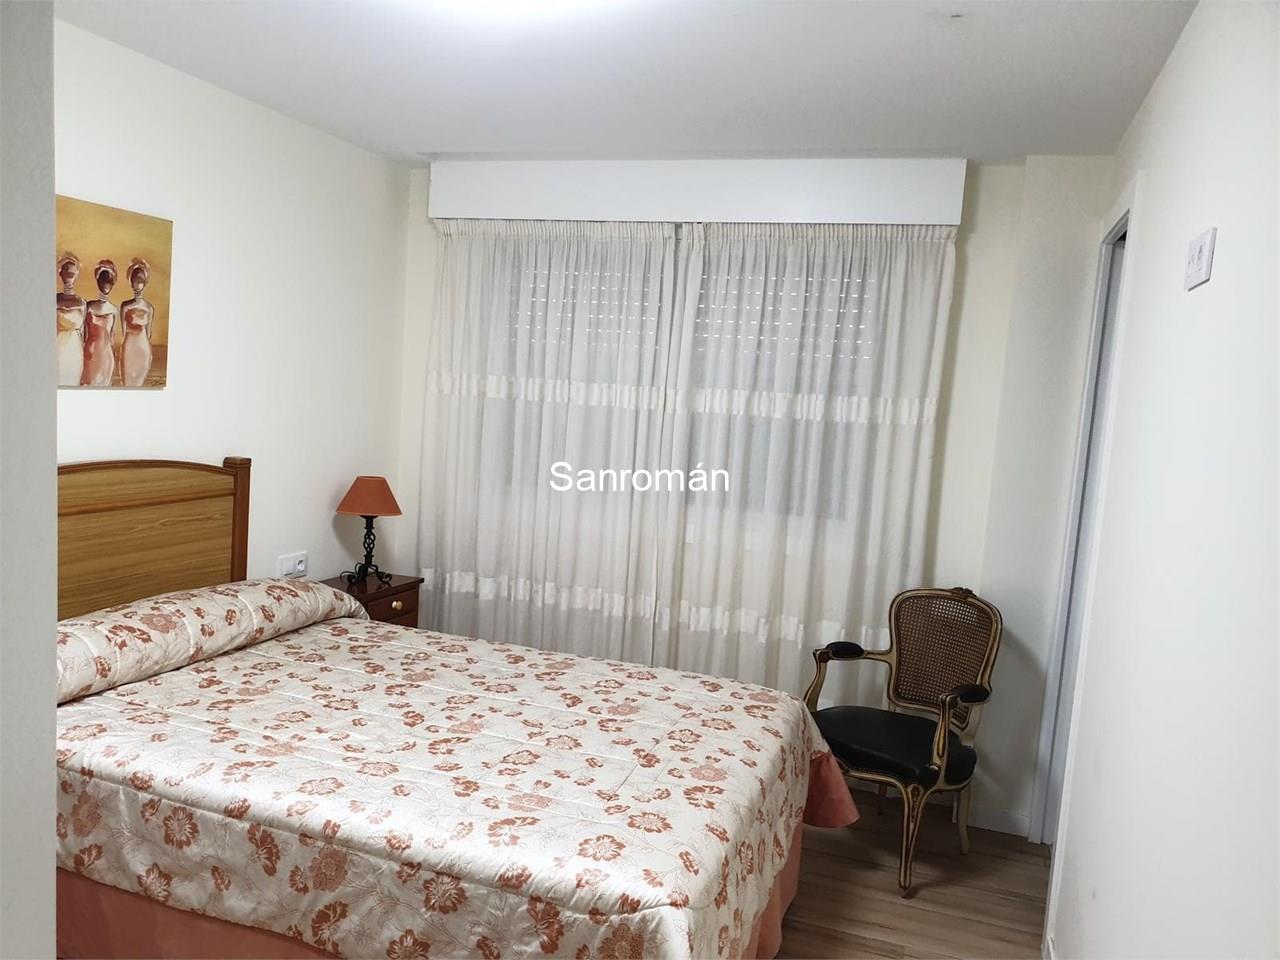 Foto 5 Apartamento de 2 dormitorios en Playa América - Nigrán. Alquiler temporada Septiembre/Junio.